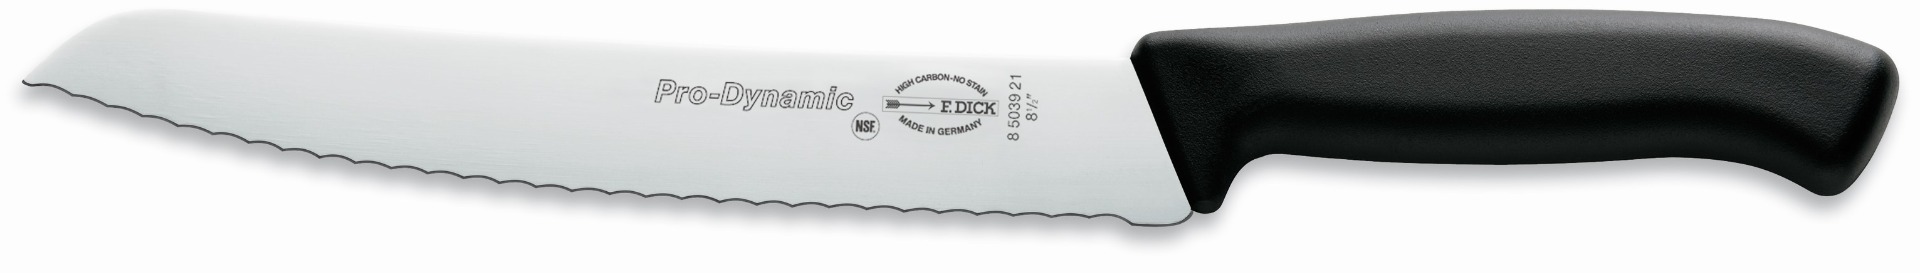 F.Dick Brotmesser schwarz 21 cm ProDynamic